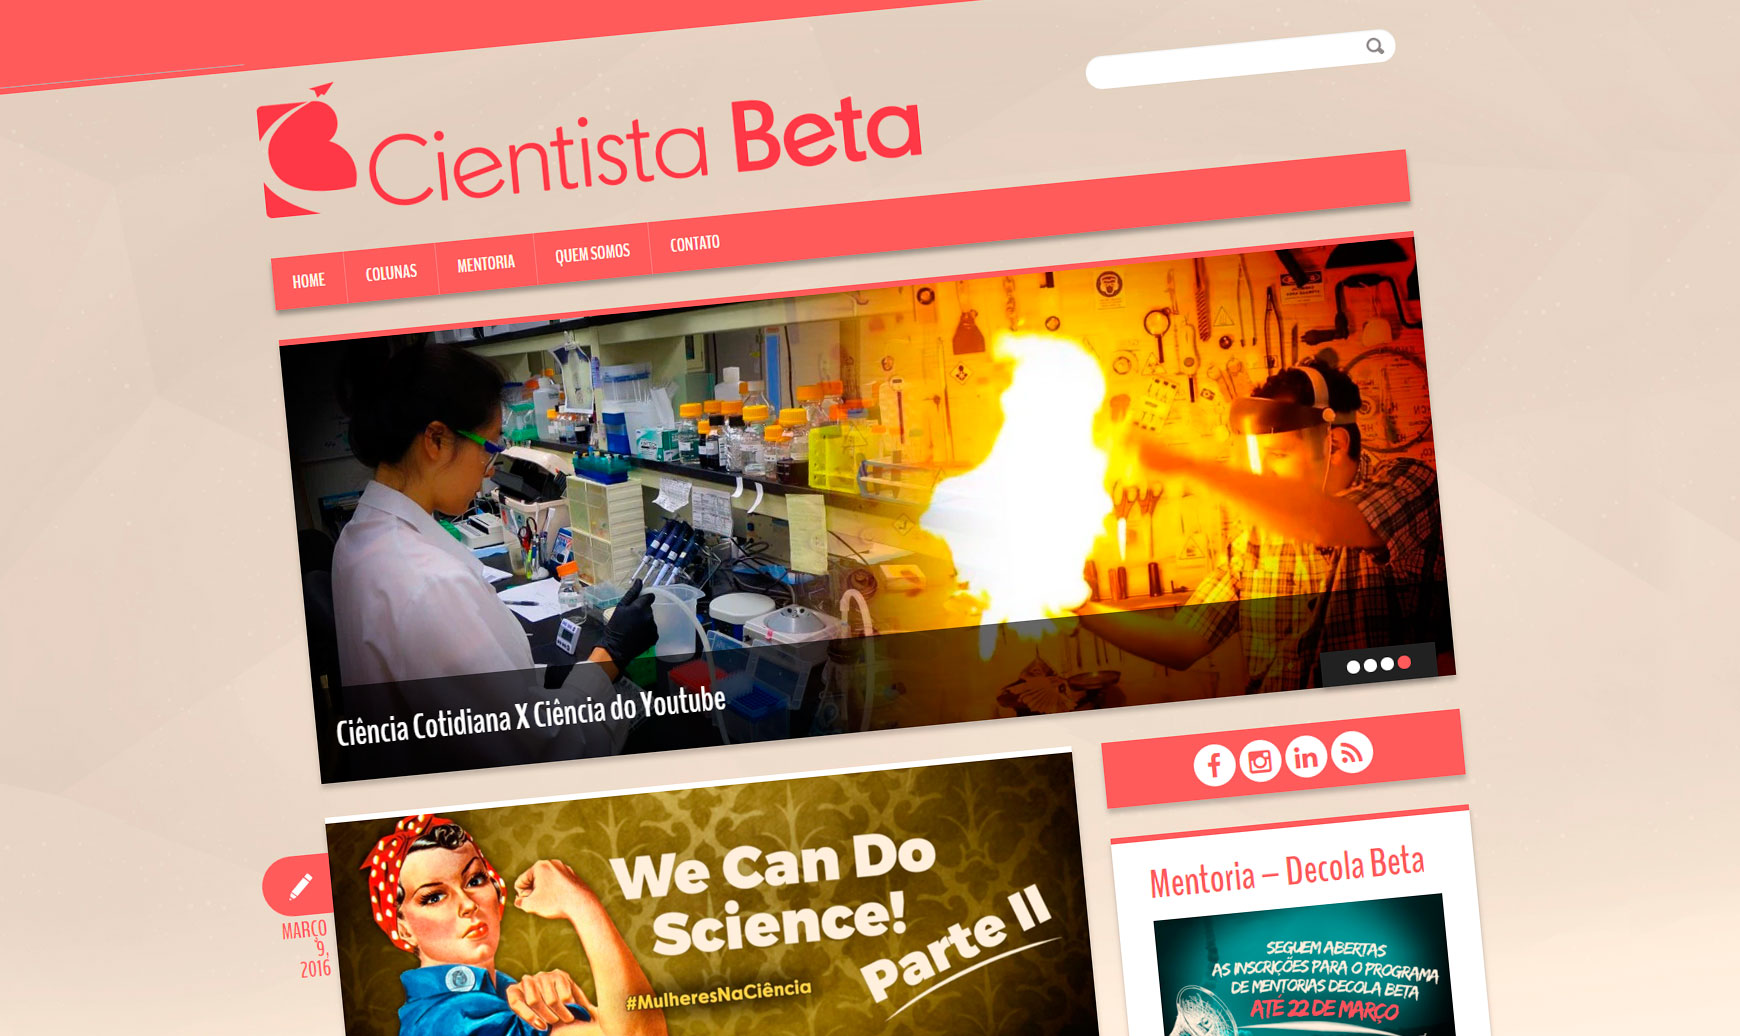 Mentoria Decola Beta cria oportunidade para o Jovem Cientista